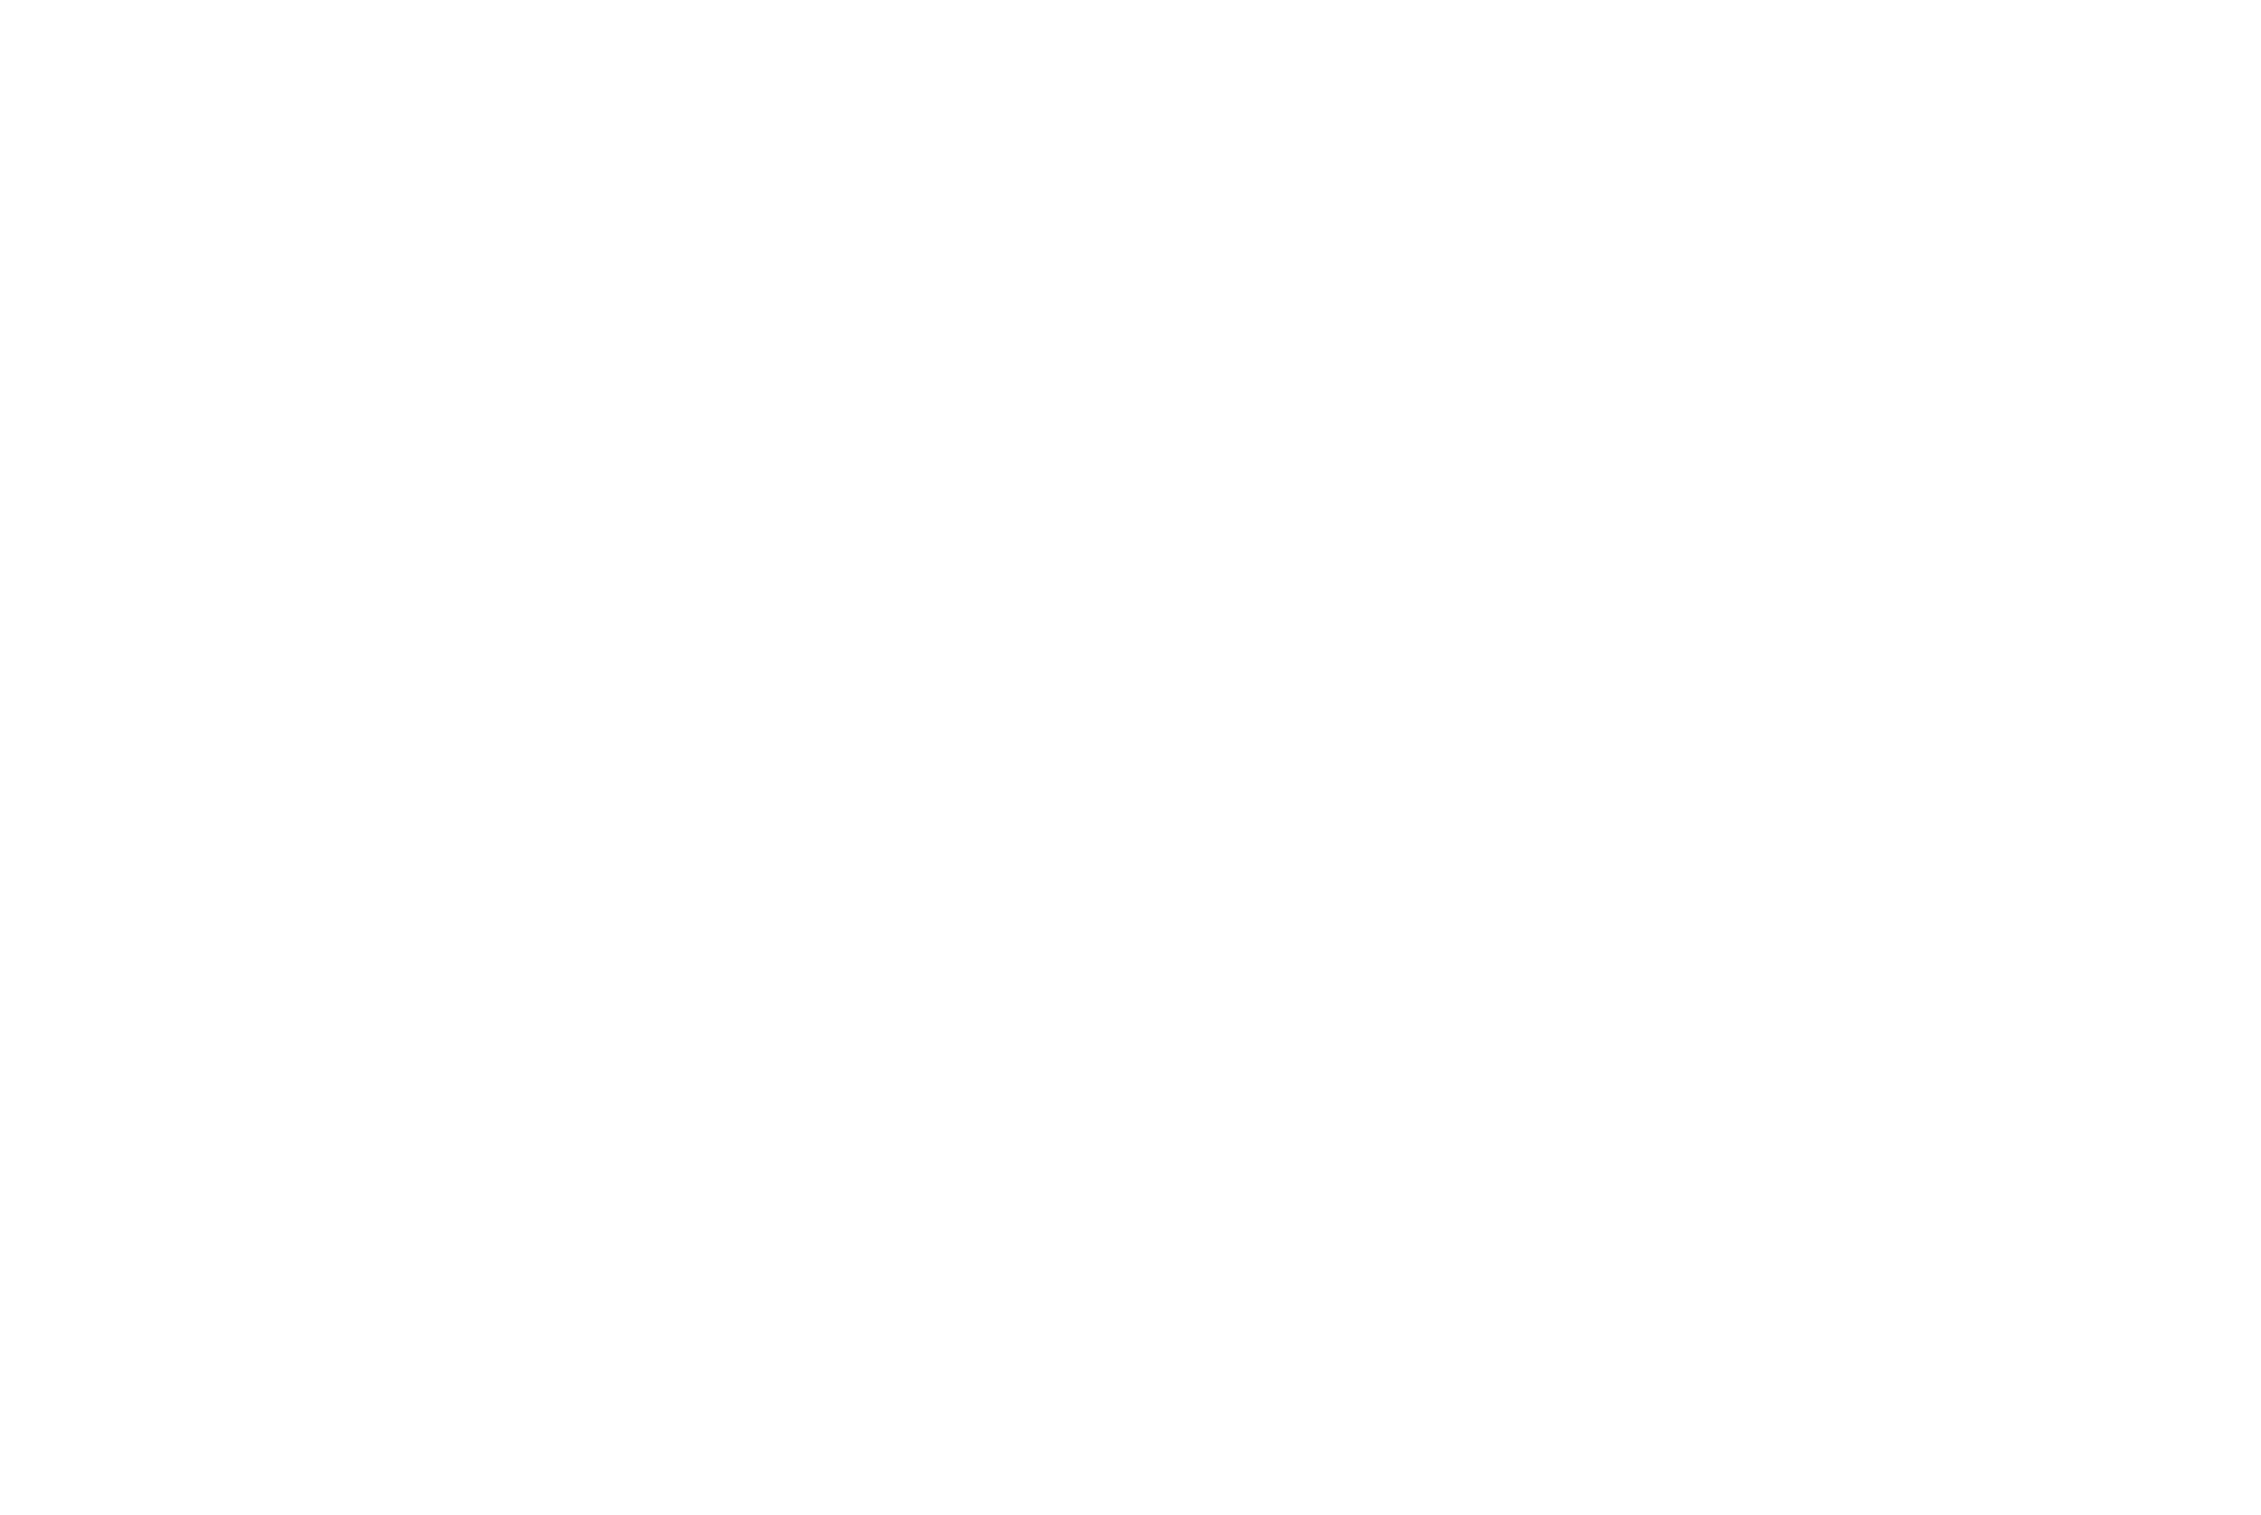 VR Awards 2021 Winner